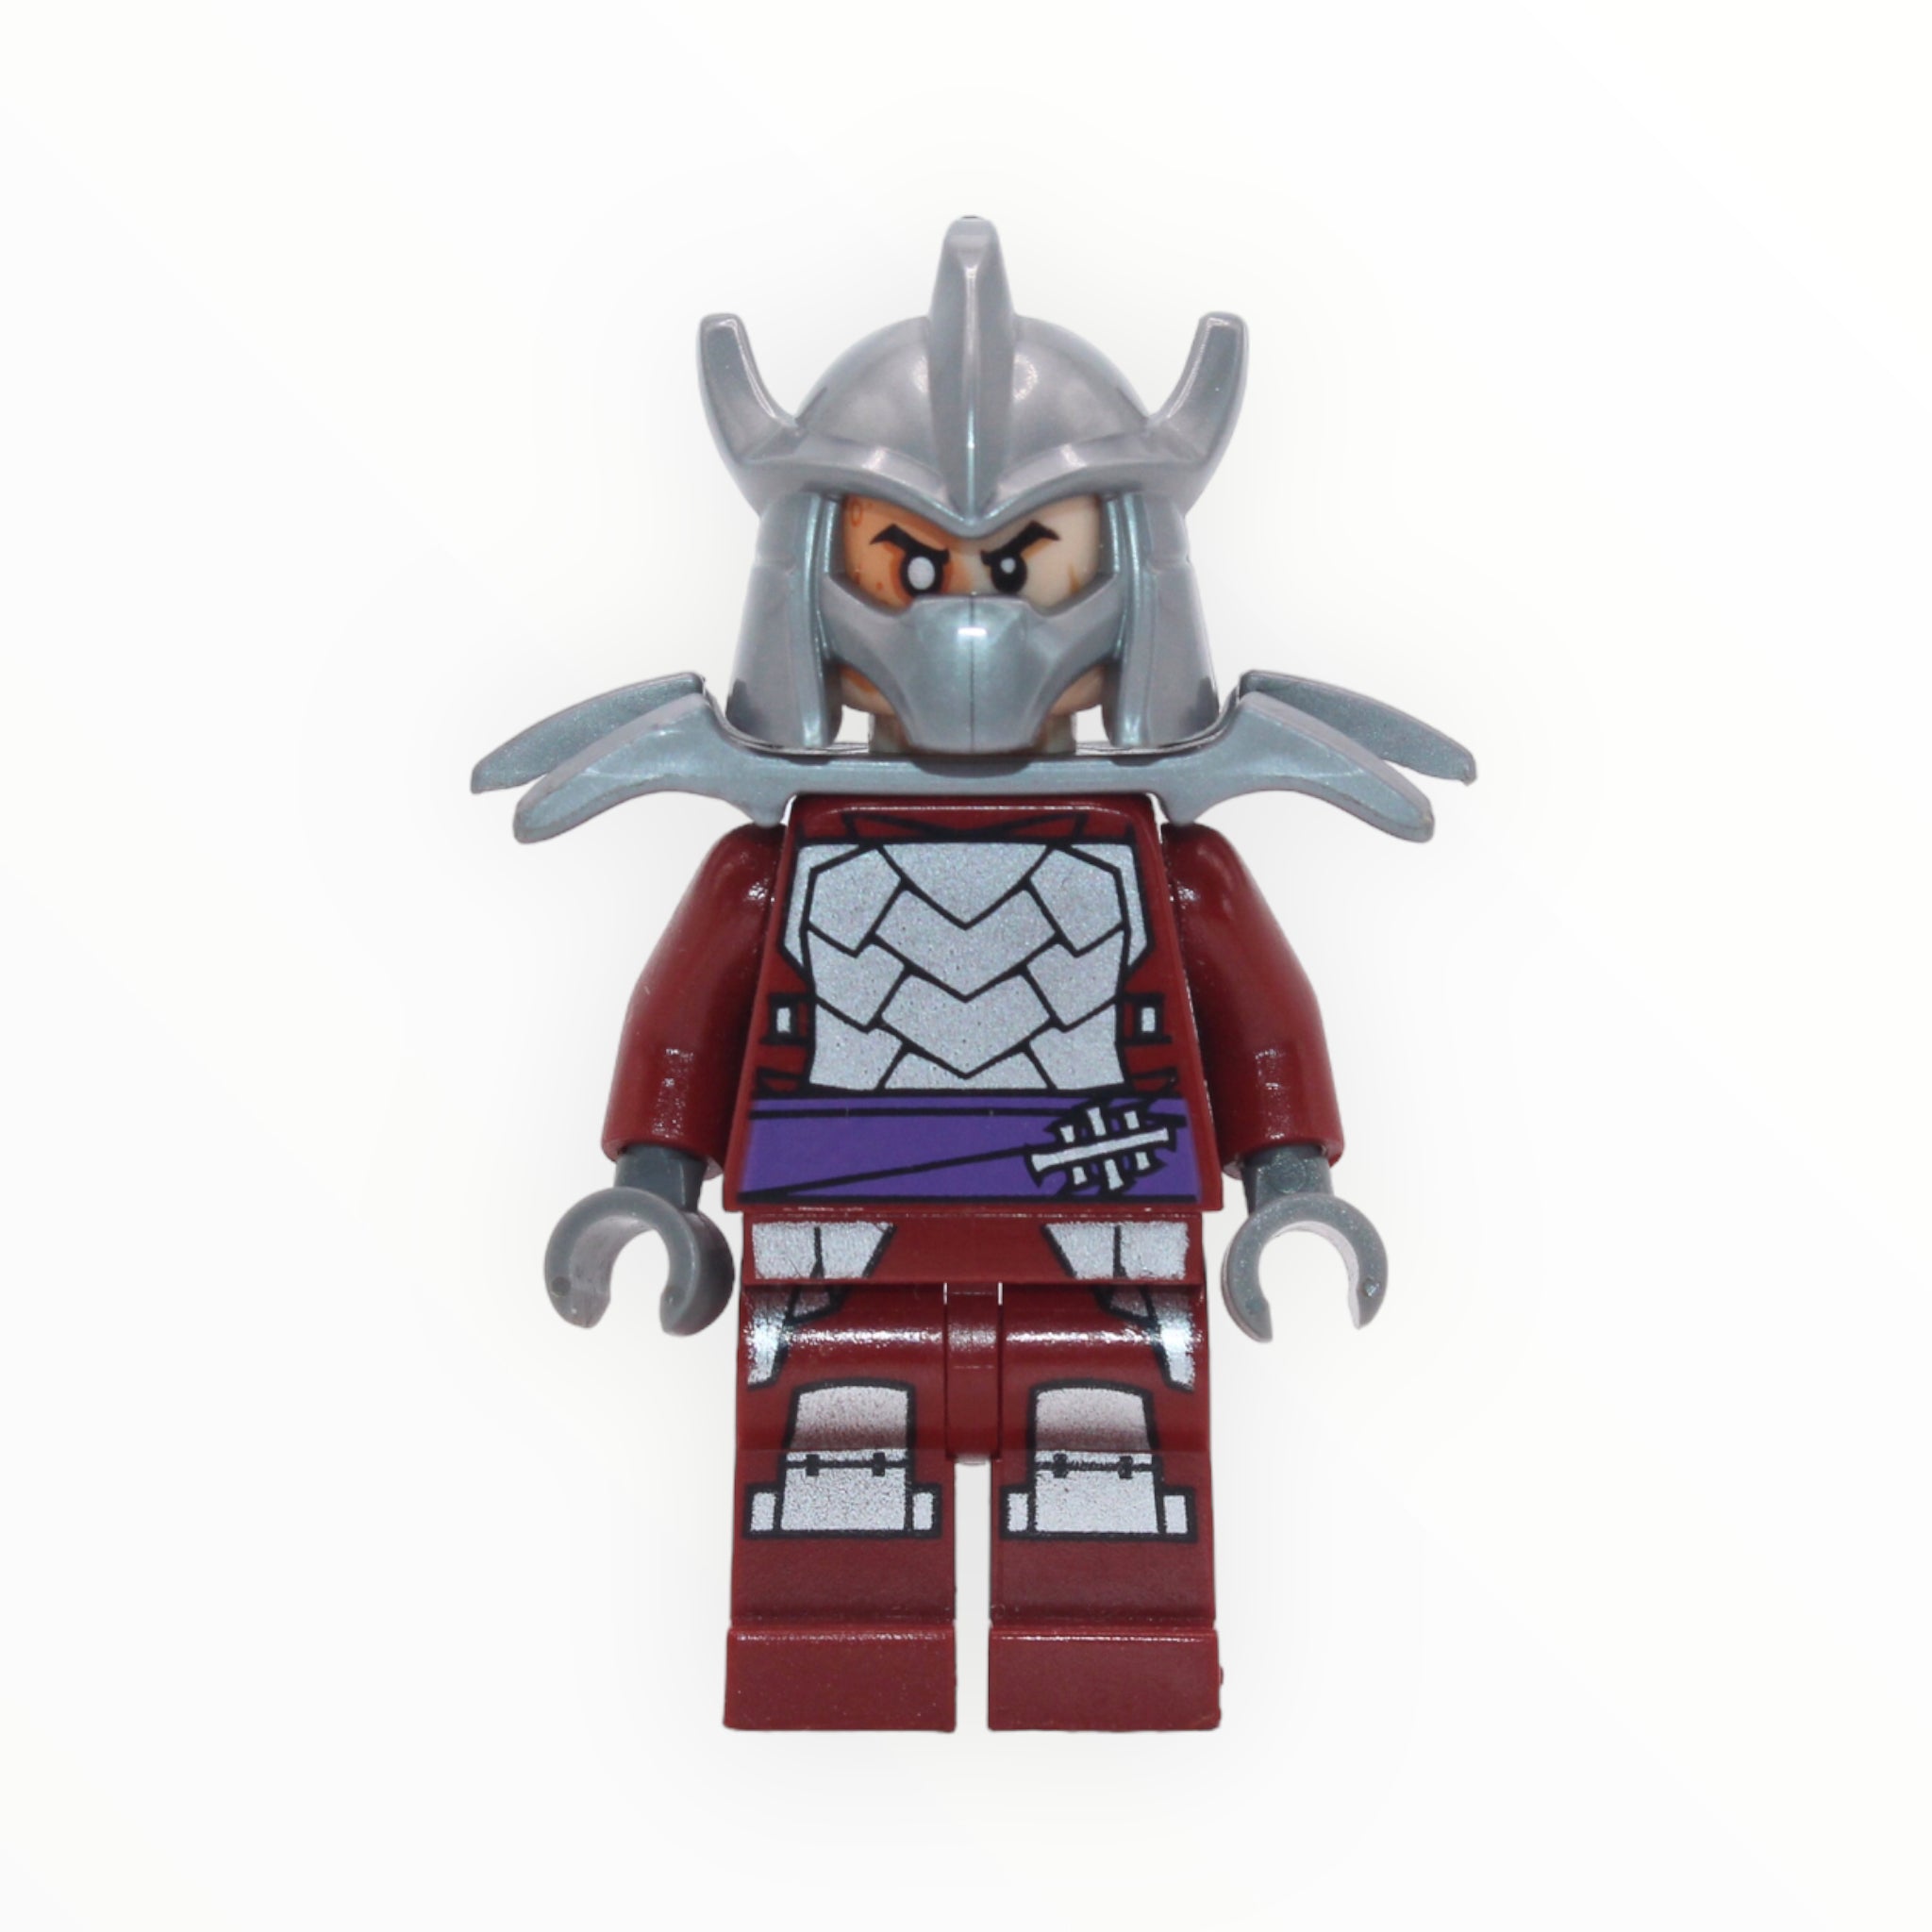 Shredder (dark red outfit, shoulder armor, no cape)